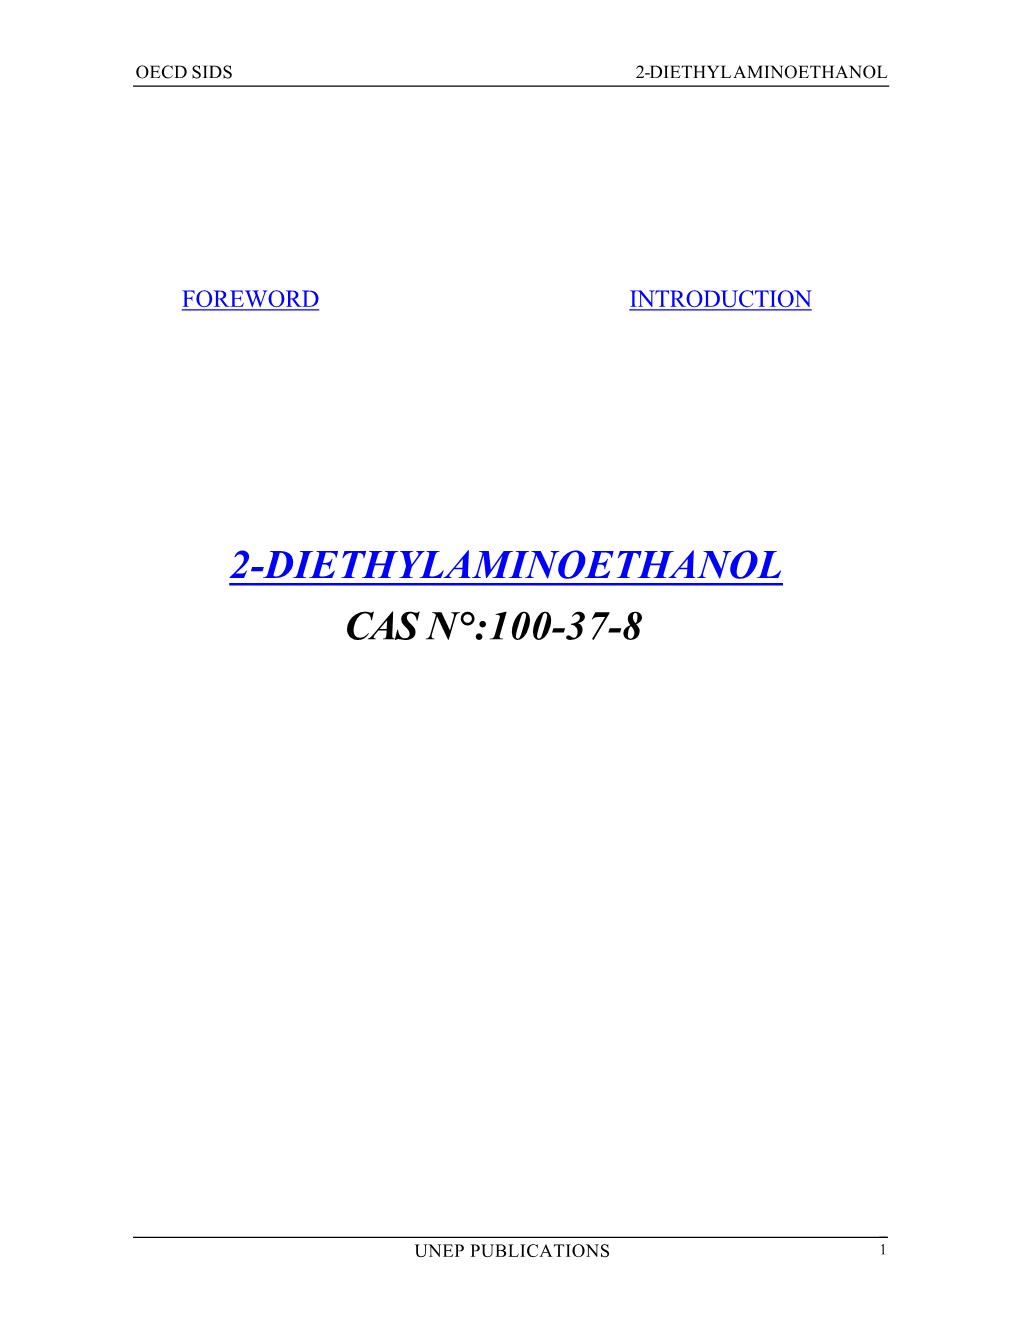 2-Diethylaminoethanol Cas N°:100-37-8